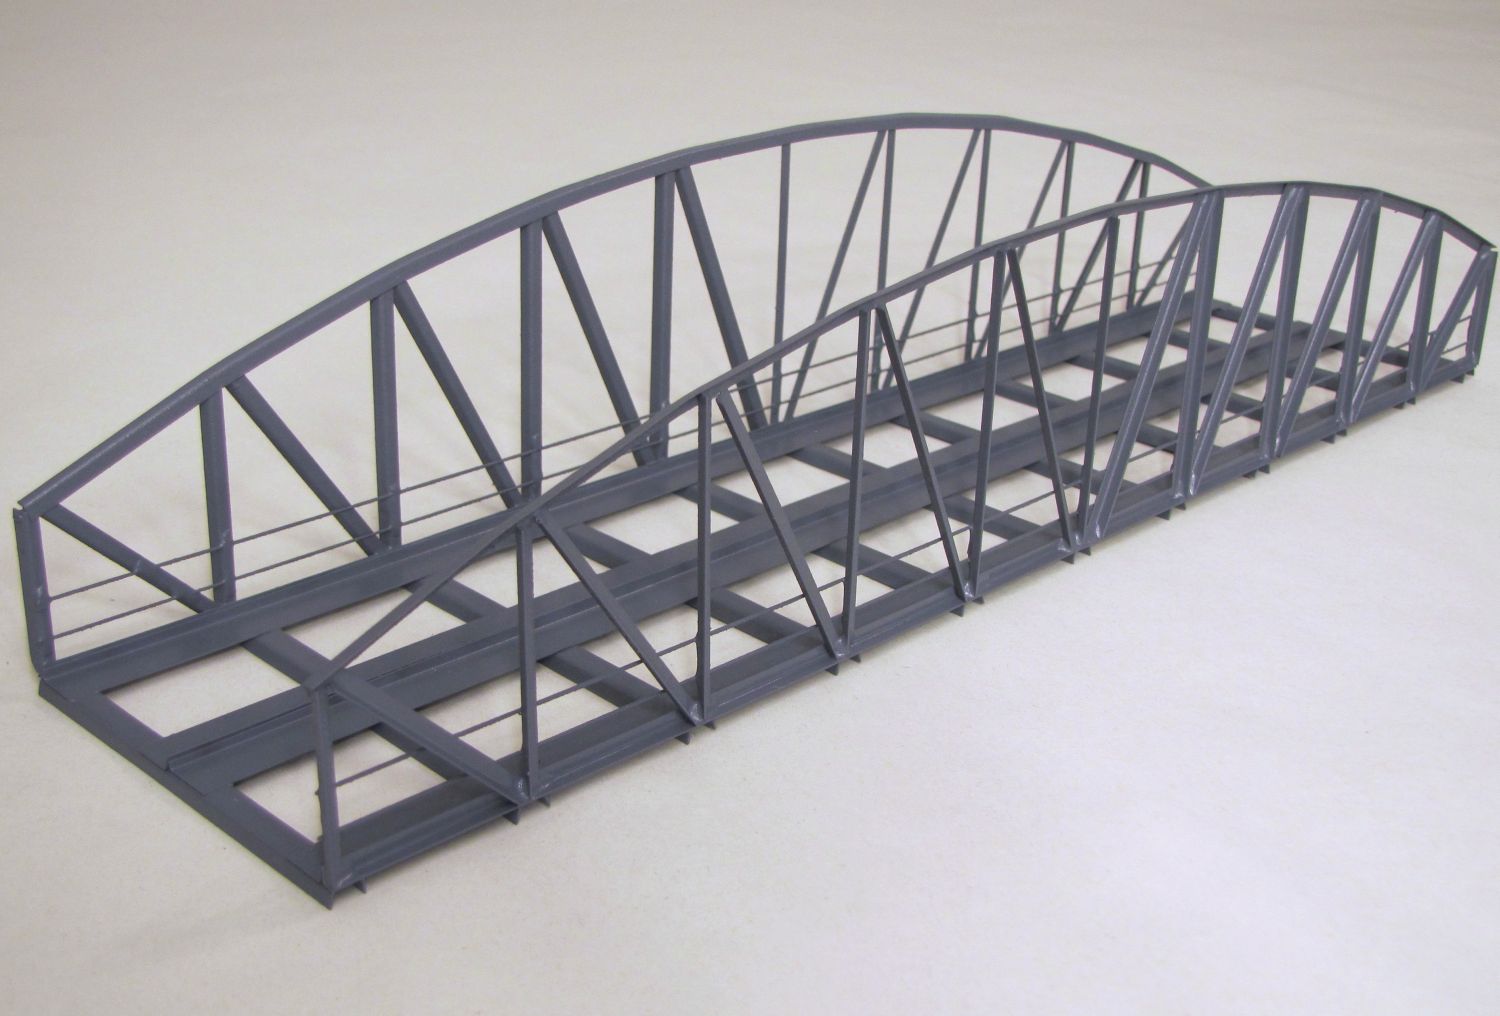 Hack 31000 - VT33-2 - Vorflutbrücke 33cm, 8cm breit, 2-gleisig, grau